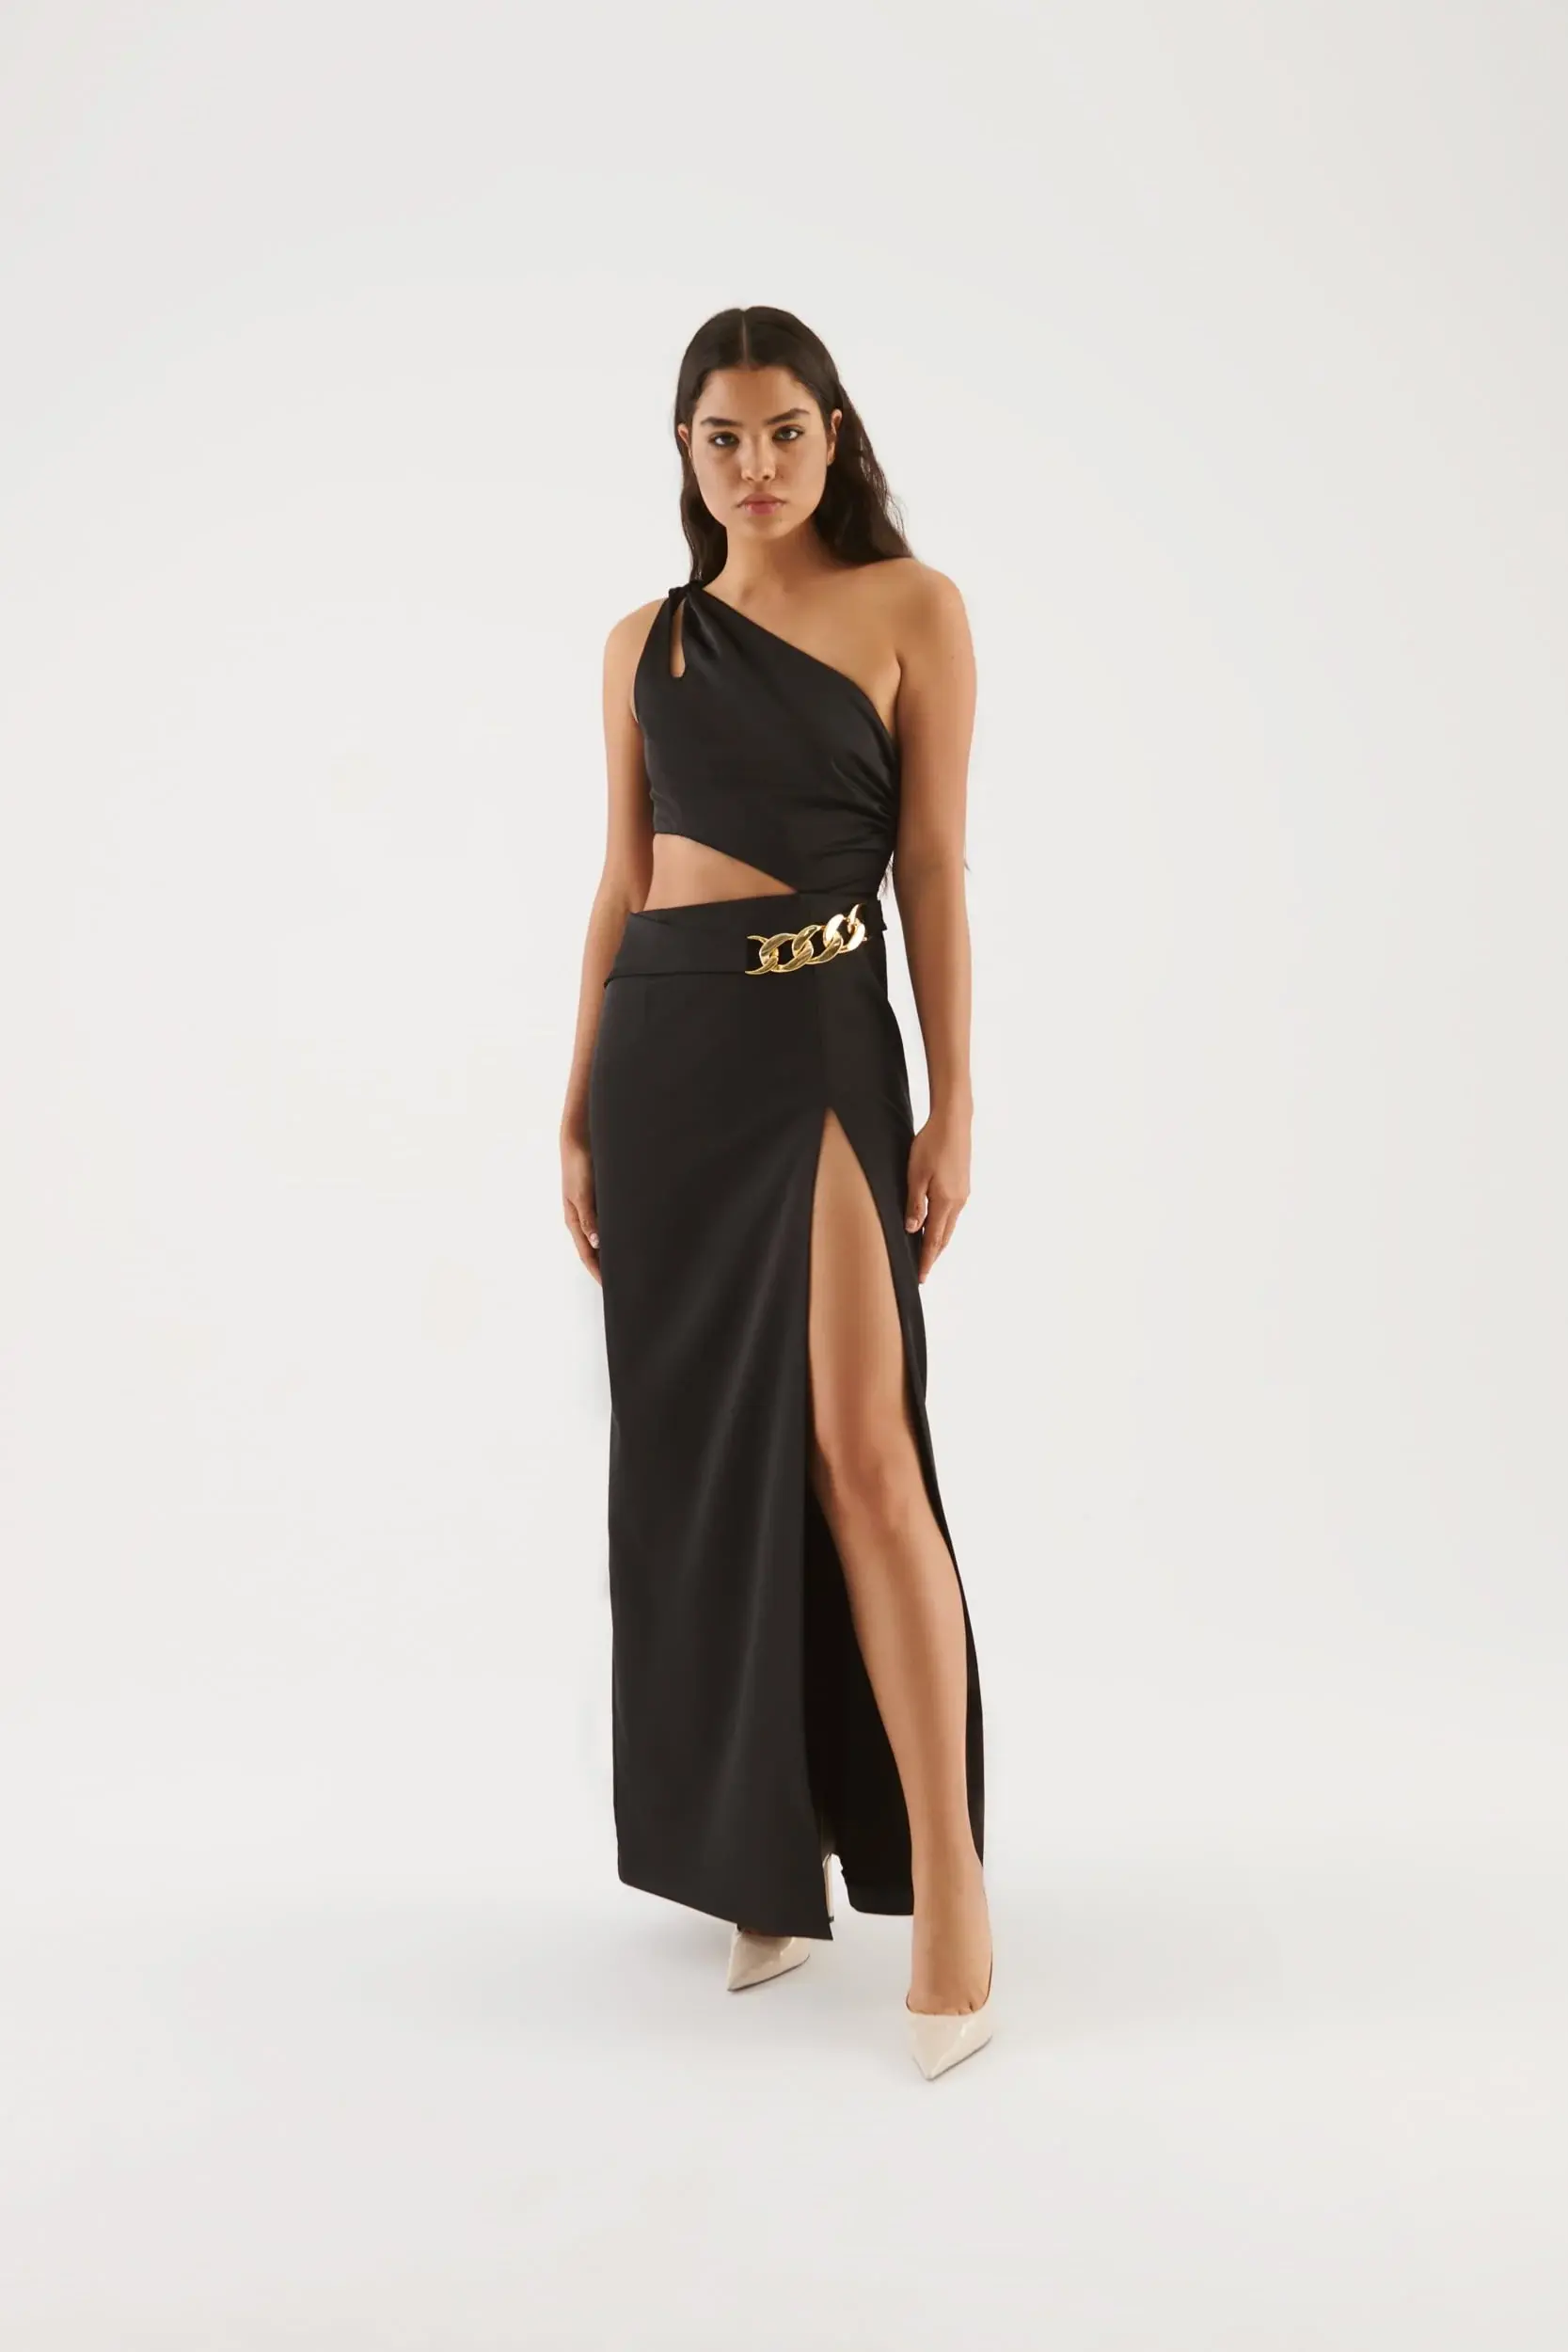 Roman Elegant Front Slit Black Formal Gown - 2 / Black. 1